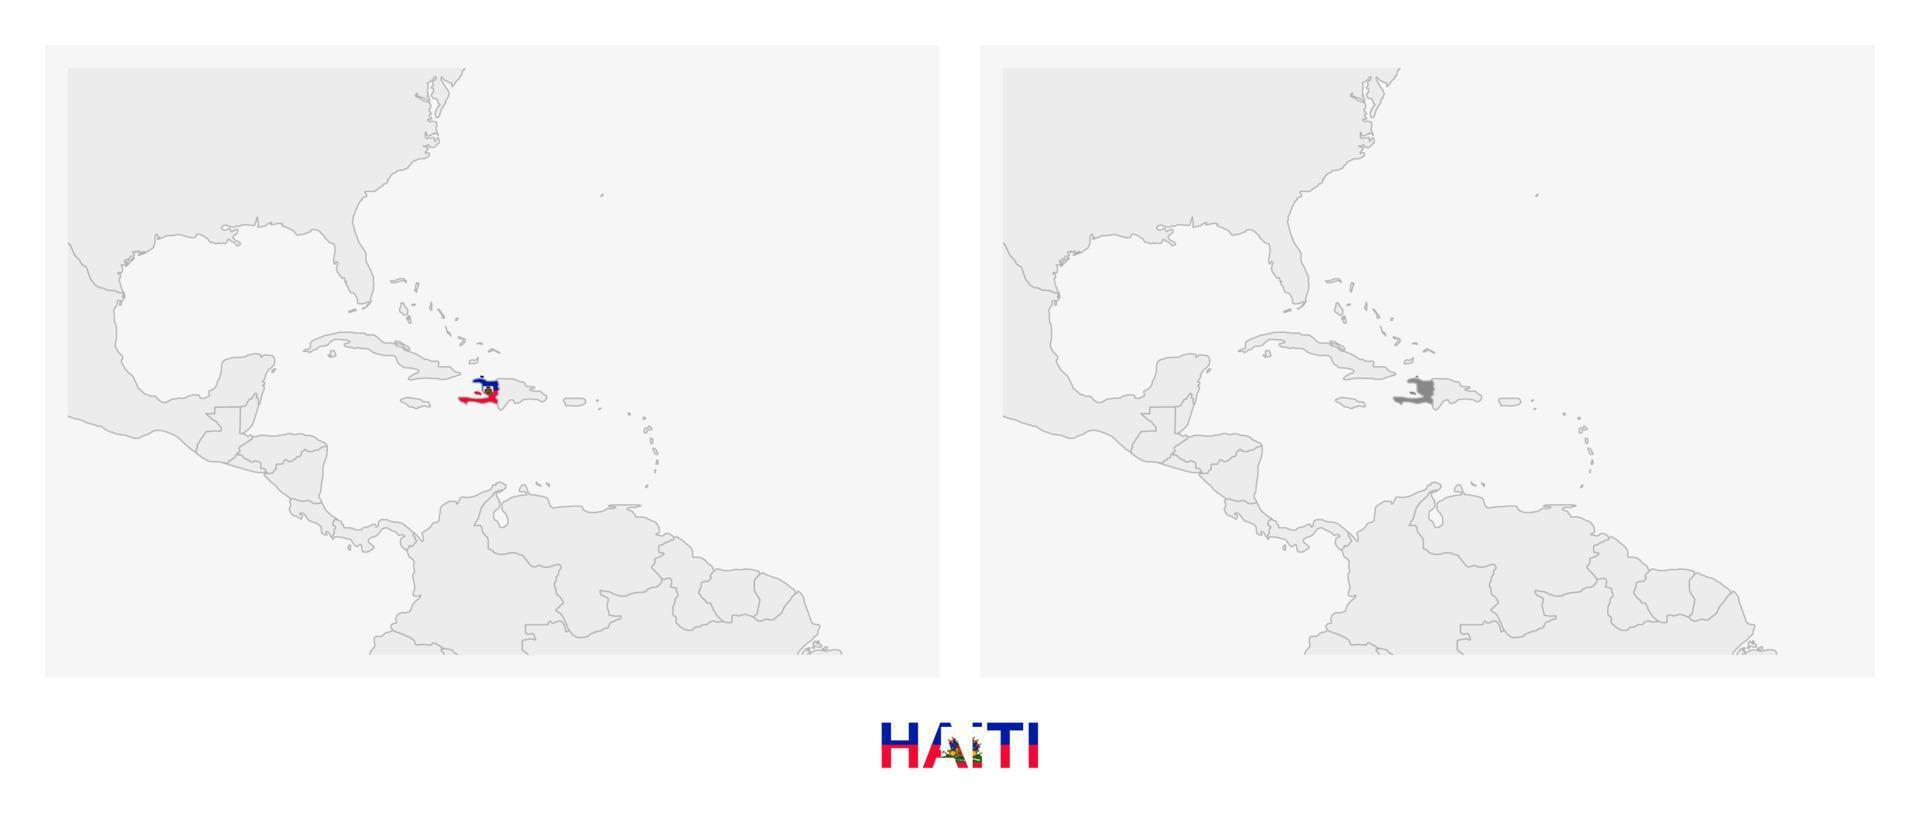 duas versões do mapa do haiti, com a bandeira do haiti e destacada em cinza escuro. vetor